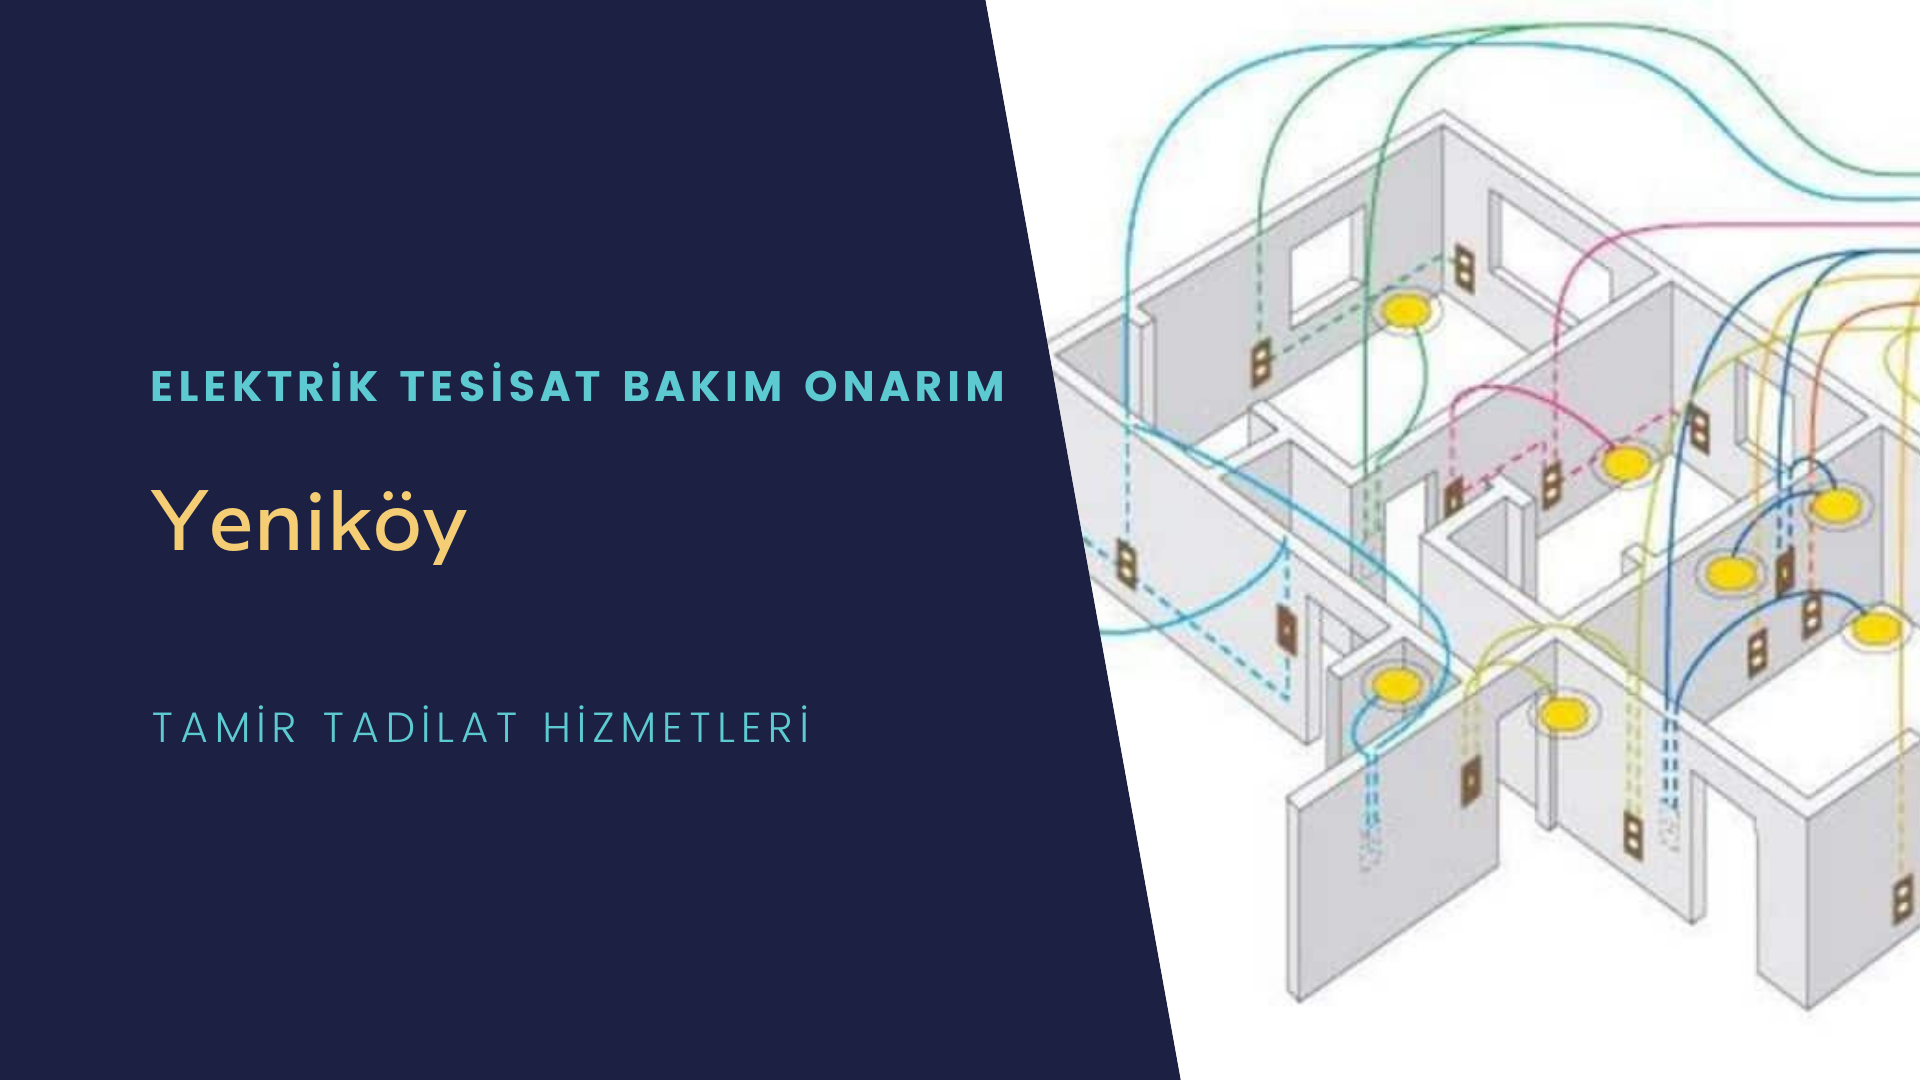 Yeniköy'de elektrik tesisatı ustalarımı arıyorsunuz doğru adrestenizi Yeniköy elektrik tesisatı ustalarımız 7/24 sizlere hizmet vermekten mutluluk duyar.